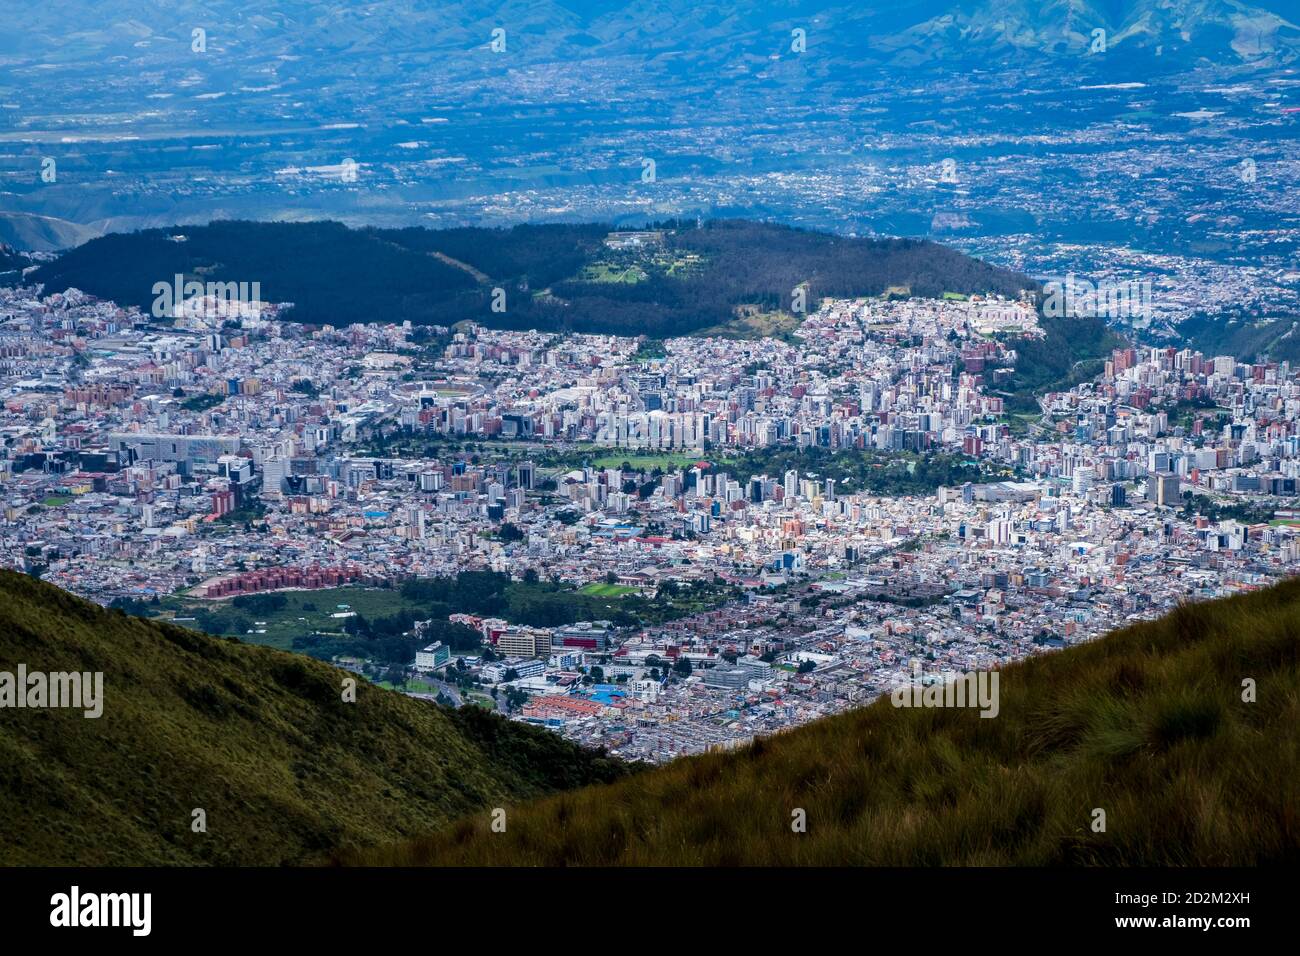 Quito, Ecuador: cityscape top view. Stock Photo